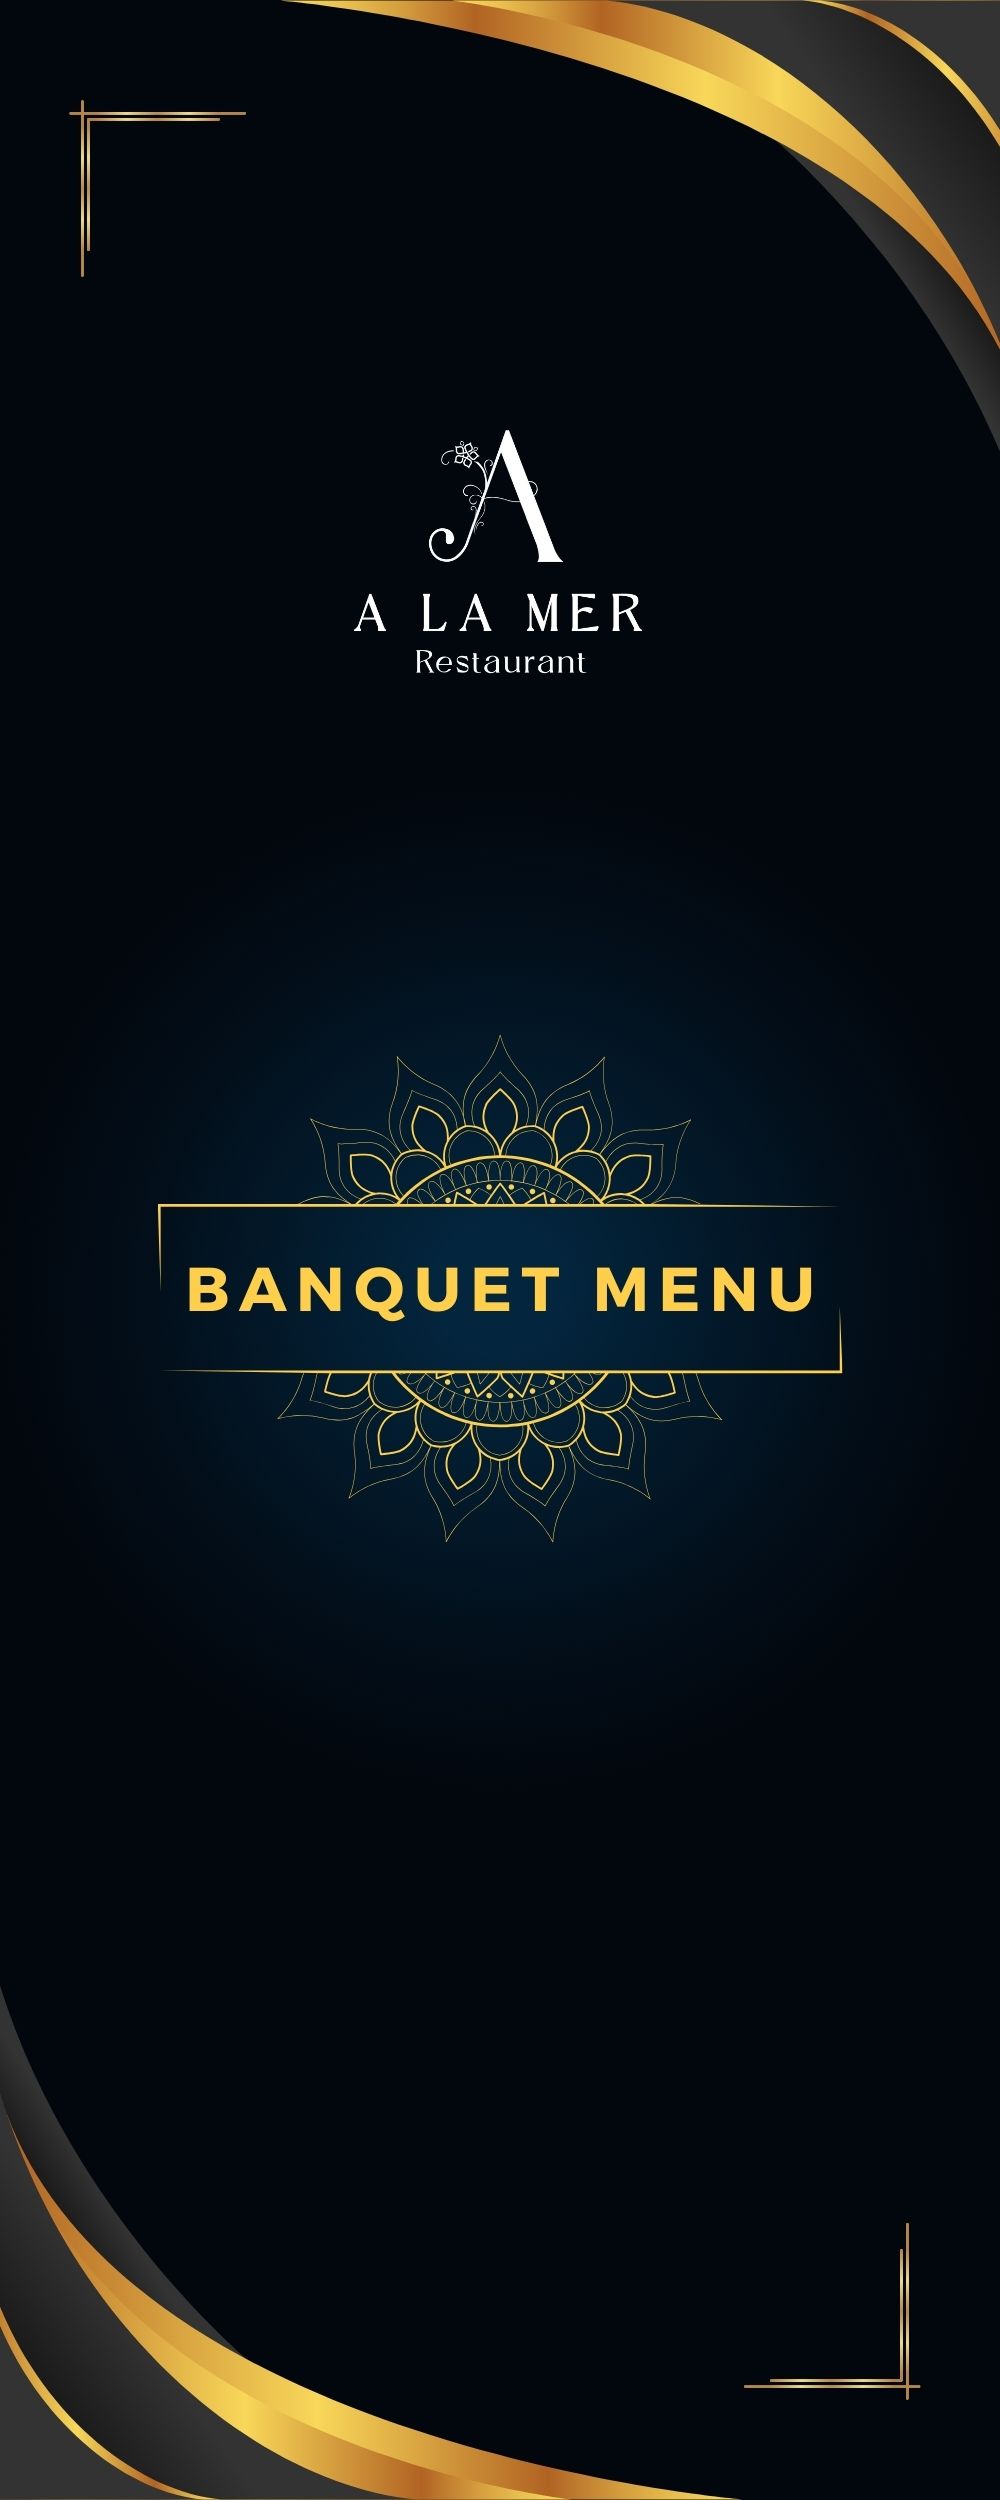 Banquet Menu